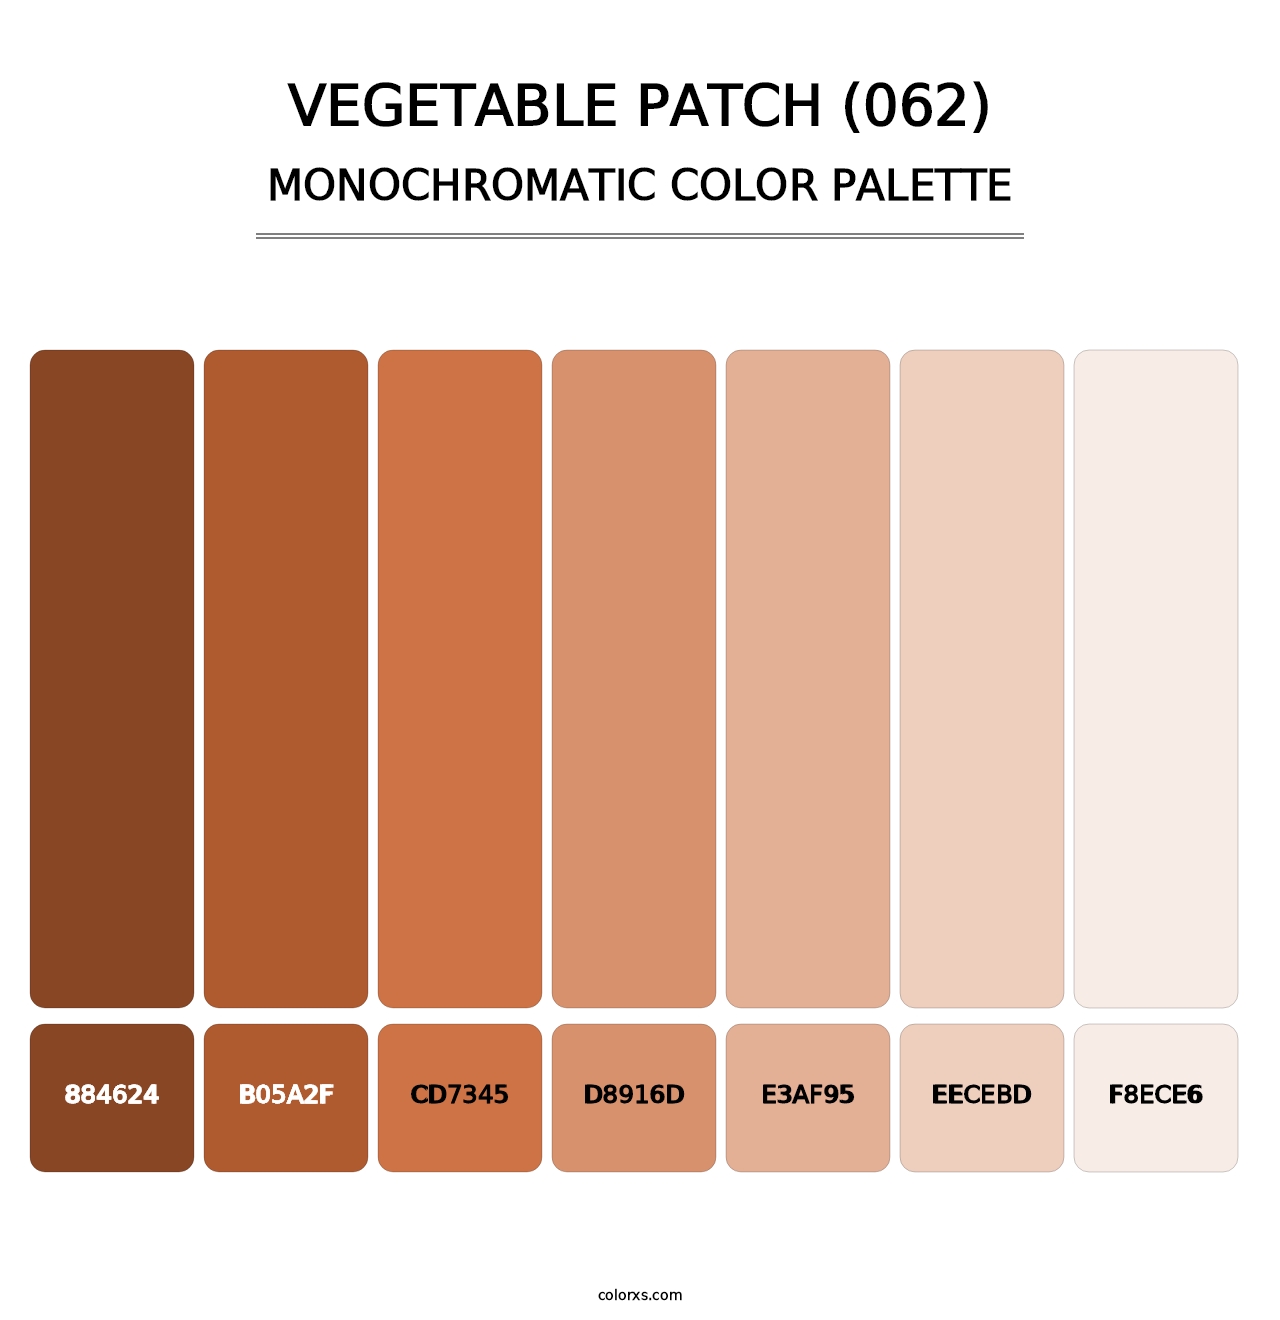 Vegetable Patch (062) - Monochromatic Color Palette